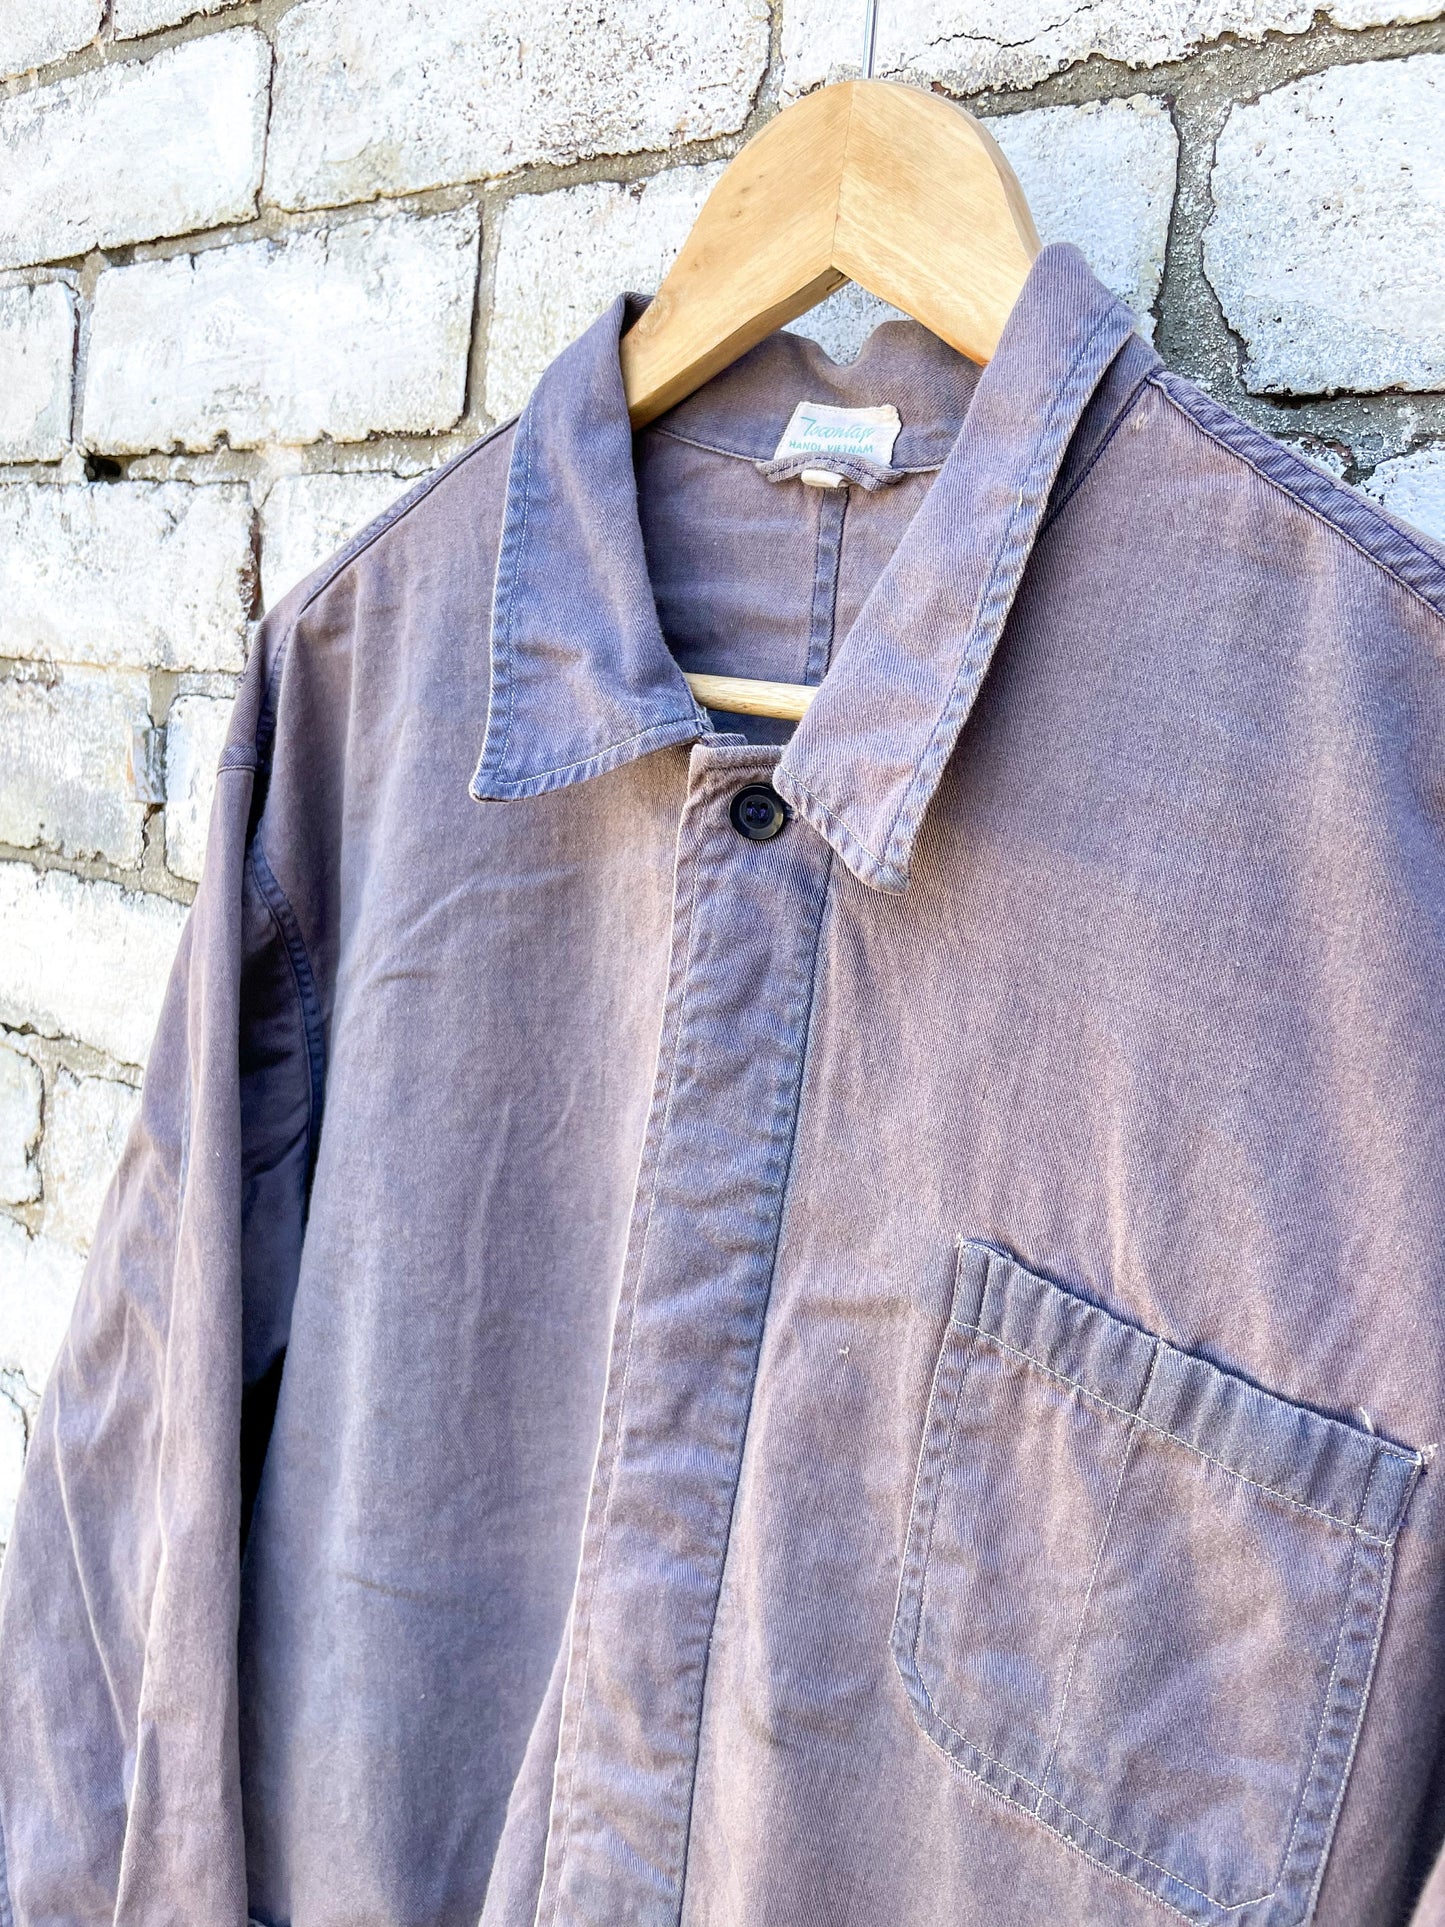 Vintage Purple Faded Chore Jacket